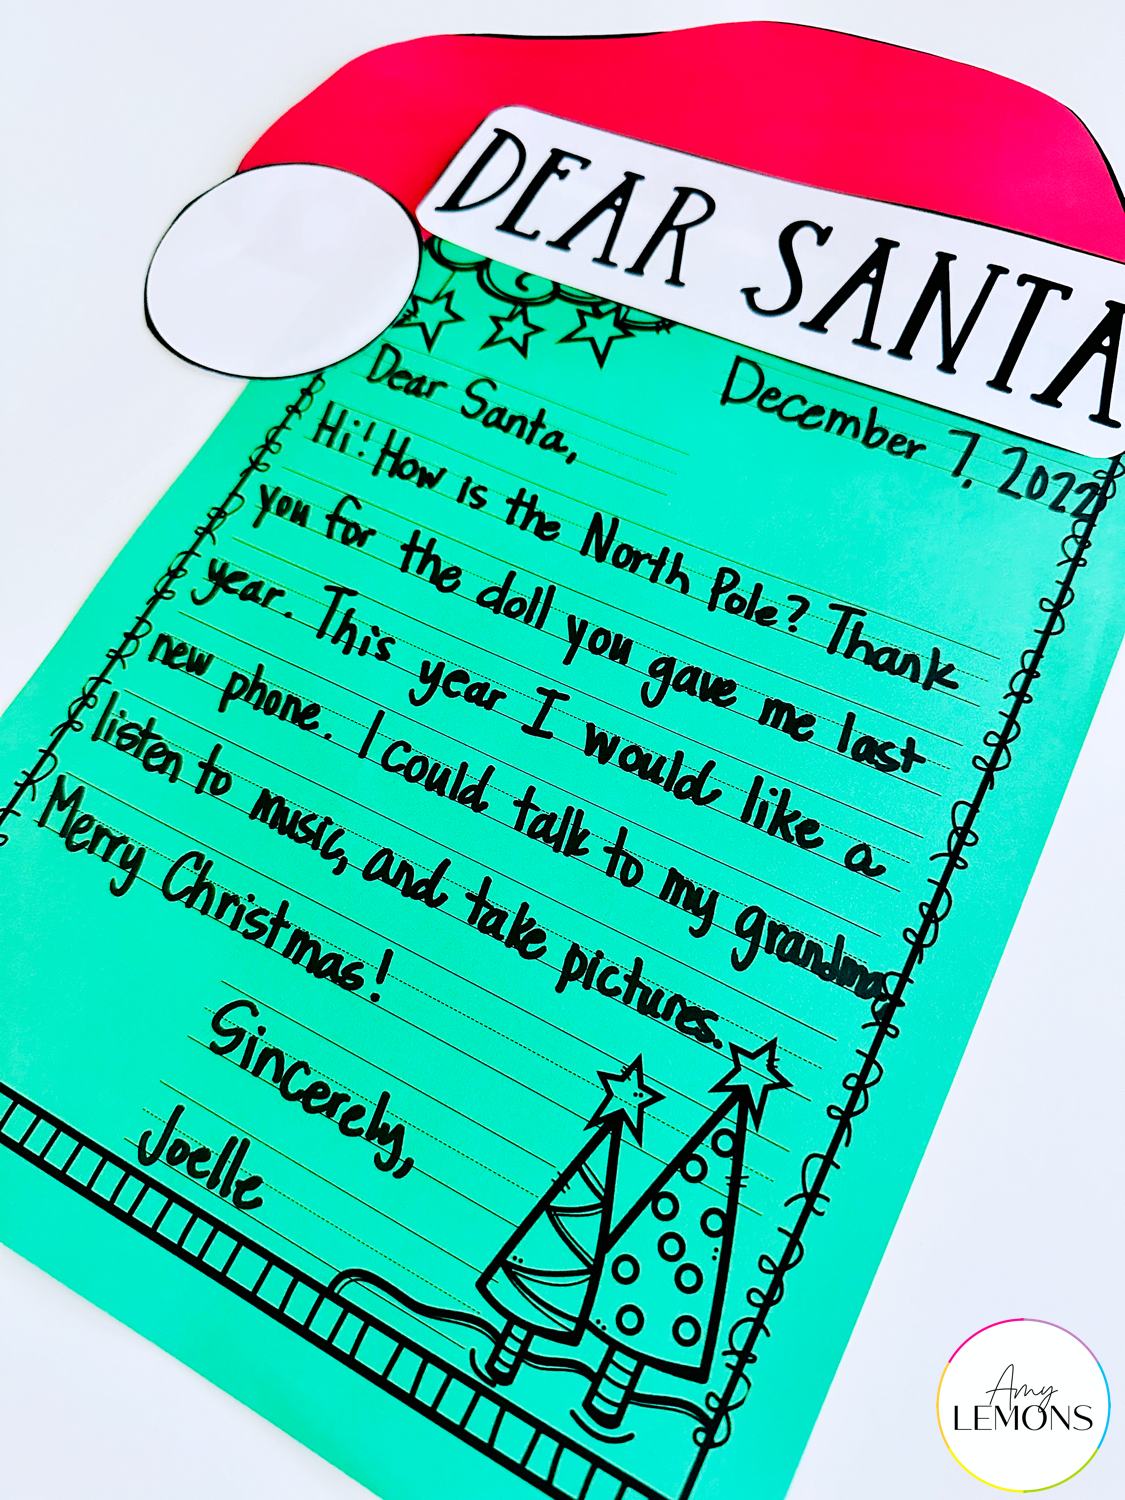 Santa letter final draft